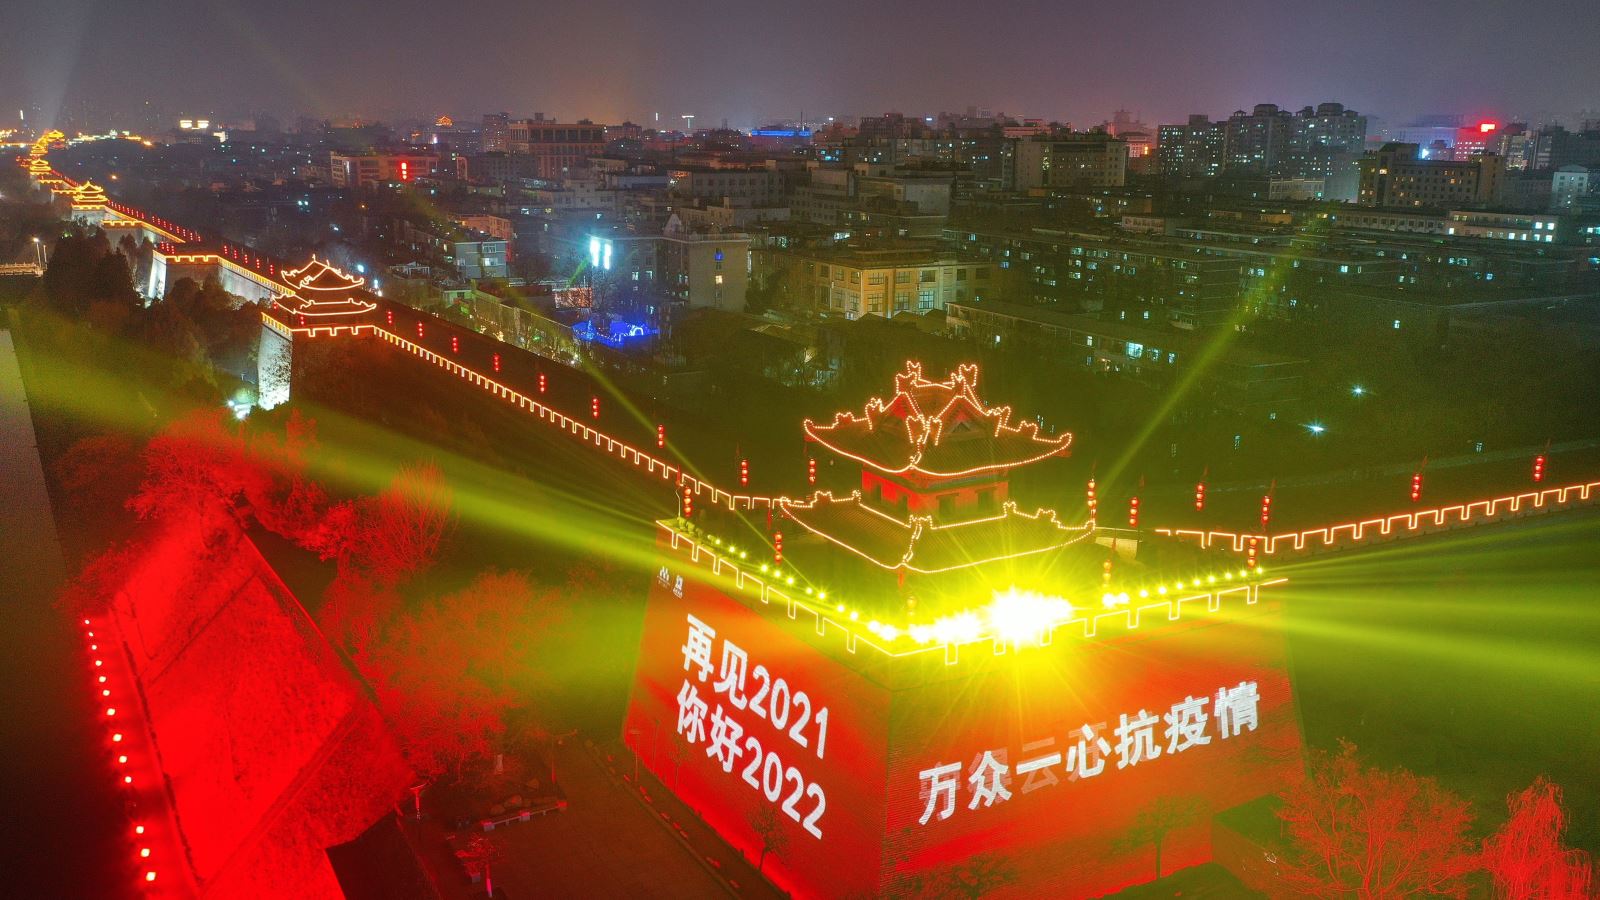  Bức tường thành cổ được gắn đèn chiếu sáng chào đón Năm mới tại Thiểm Tây, Trung Quốc tối 31-12-2021. Ảnh: THX/TTXVN